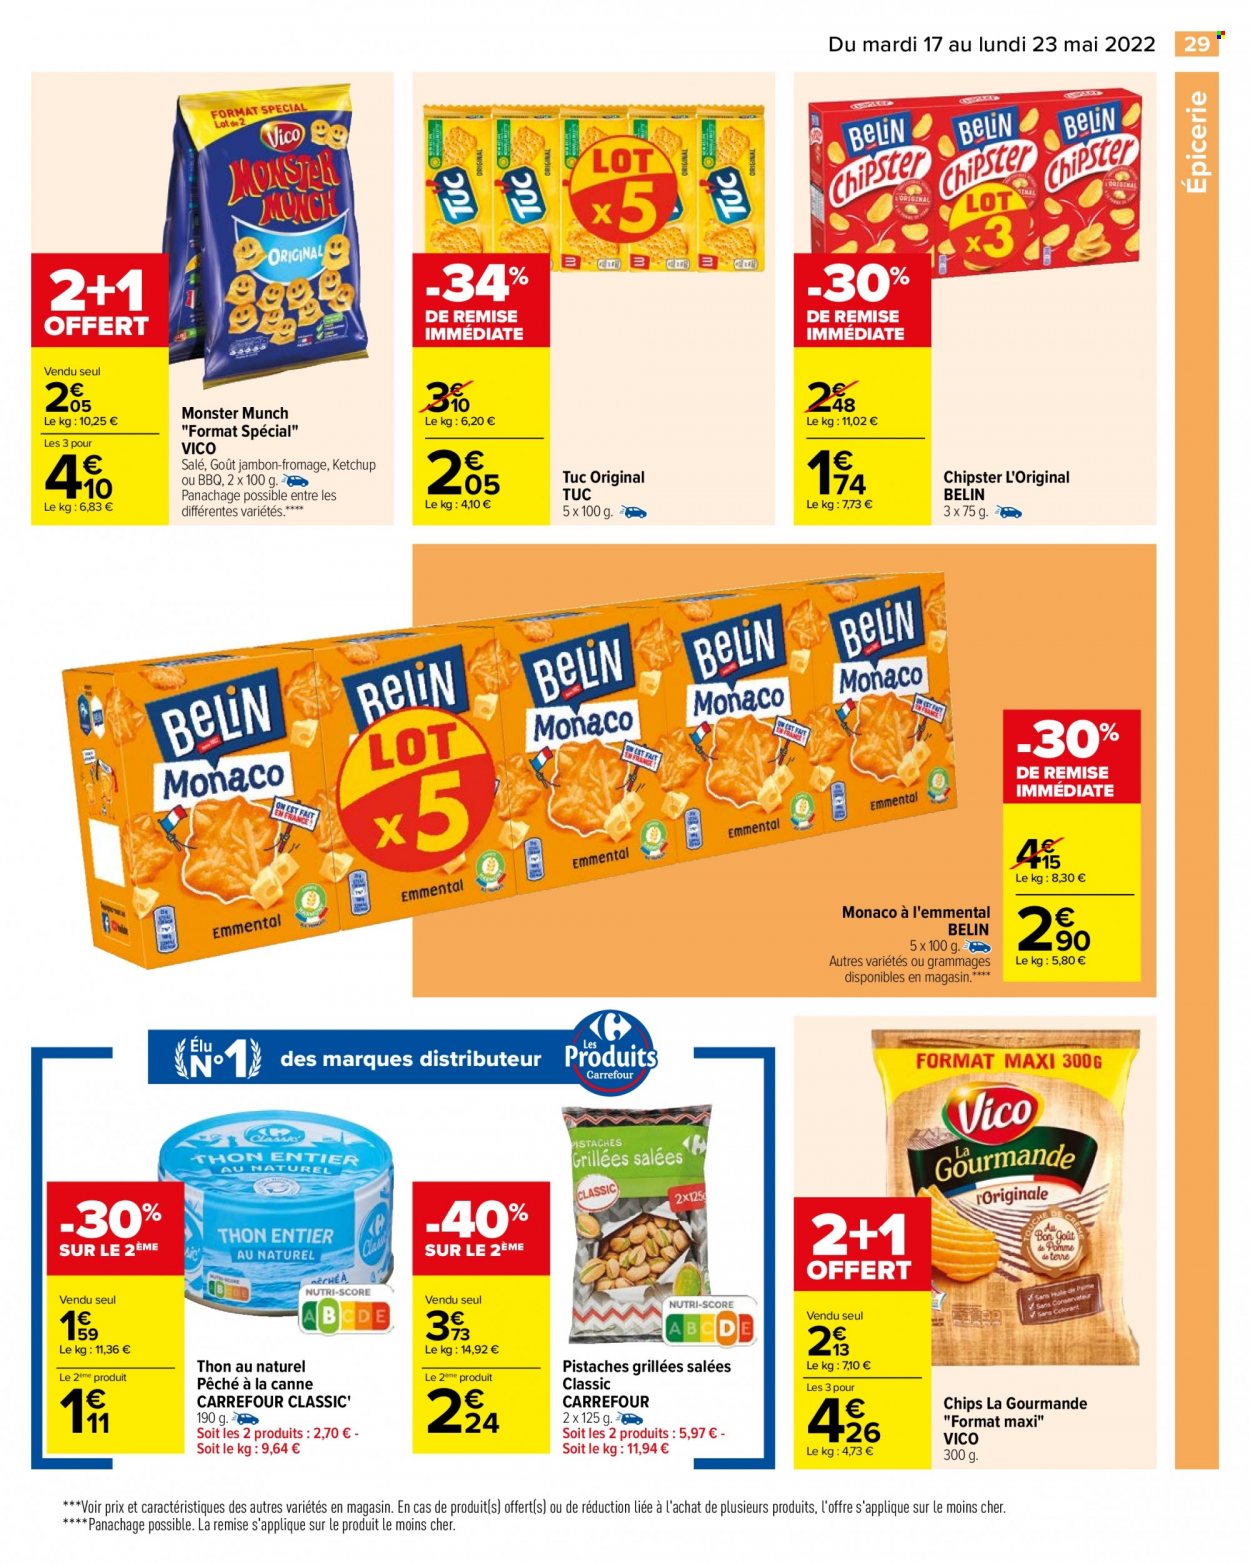 thumbnail - Catalogue Carrefour Hypermarchés - 17/05/2022 - 23/05/2022 - Produits soldés - jambon, fromage, chips, Vico, Monster Munch, TUC, pistache, Monster. Page 31.